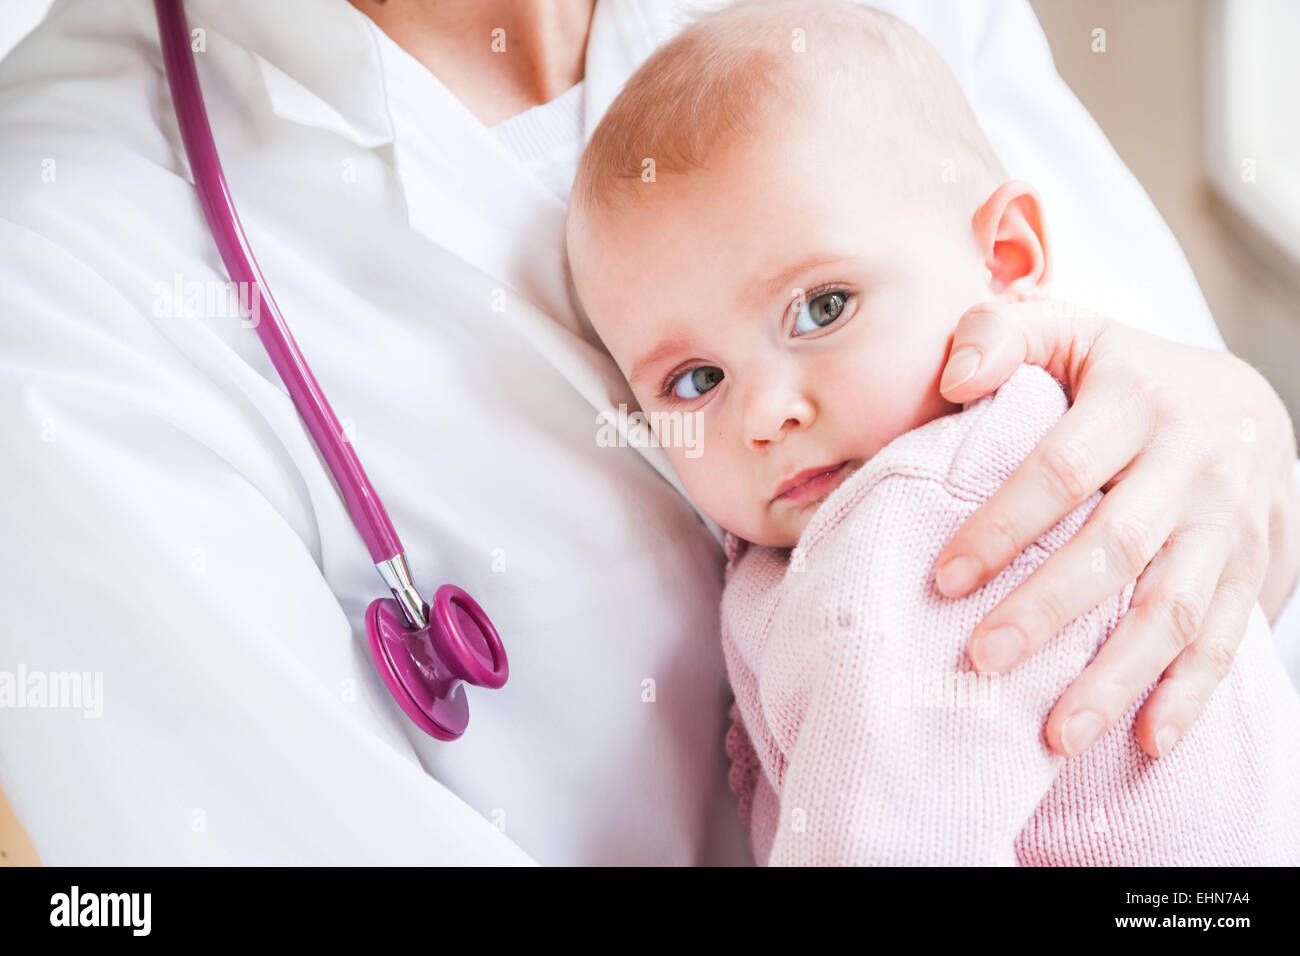 7-month-old baby girl avec le pédiatre. Banque D'Images